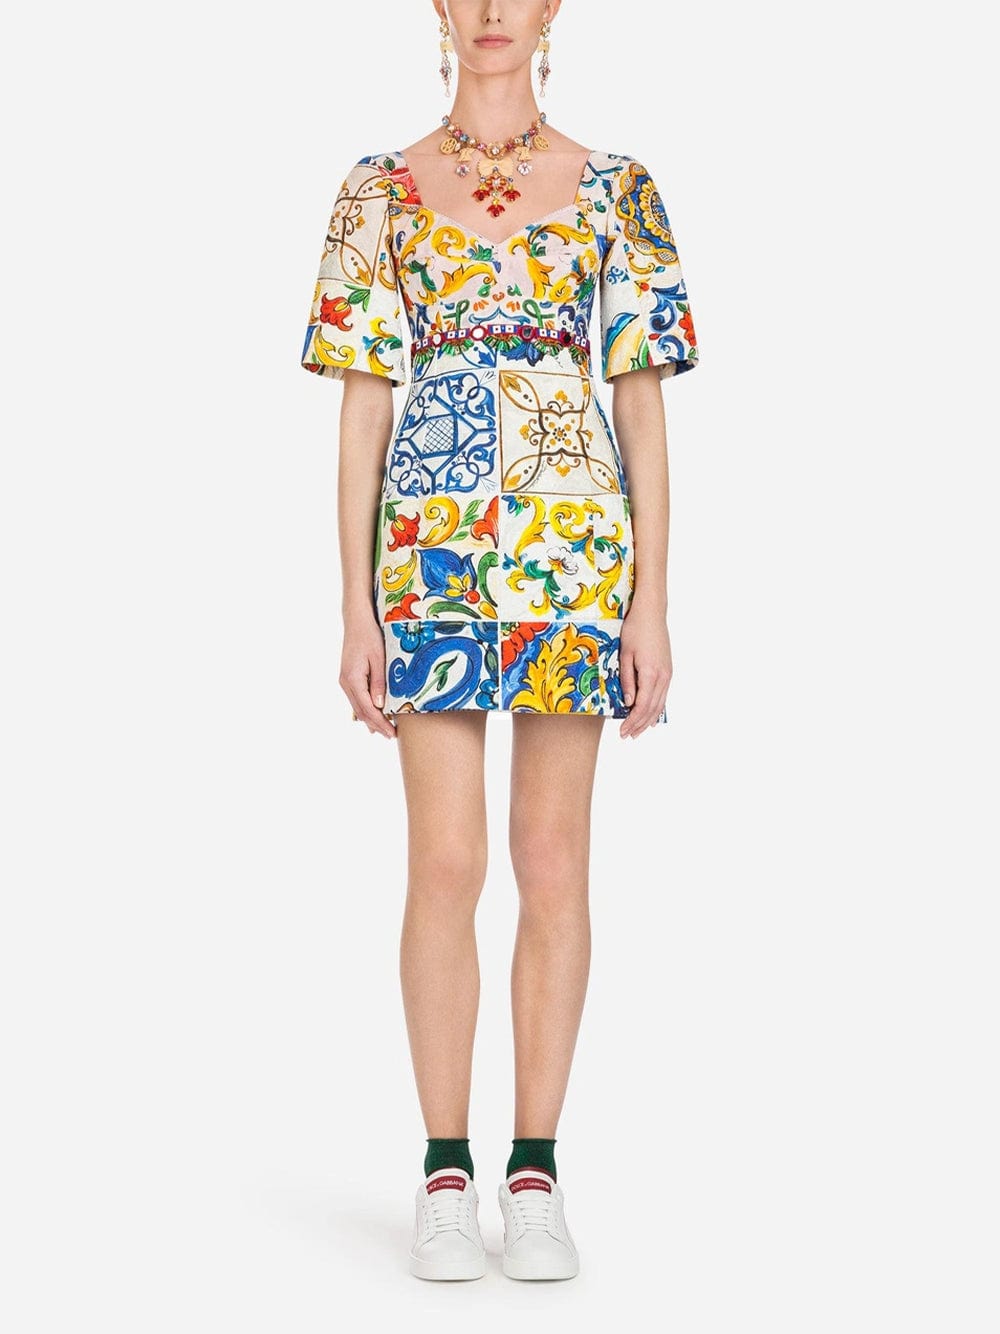 DOLCE & GABBANA - Majolica Print Mini Dress Dolce & Gabbana